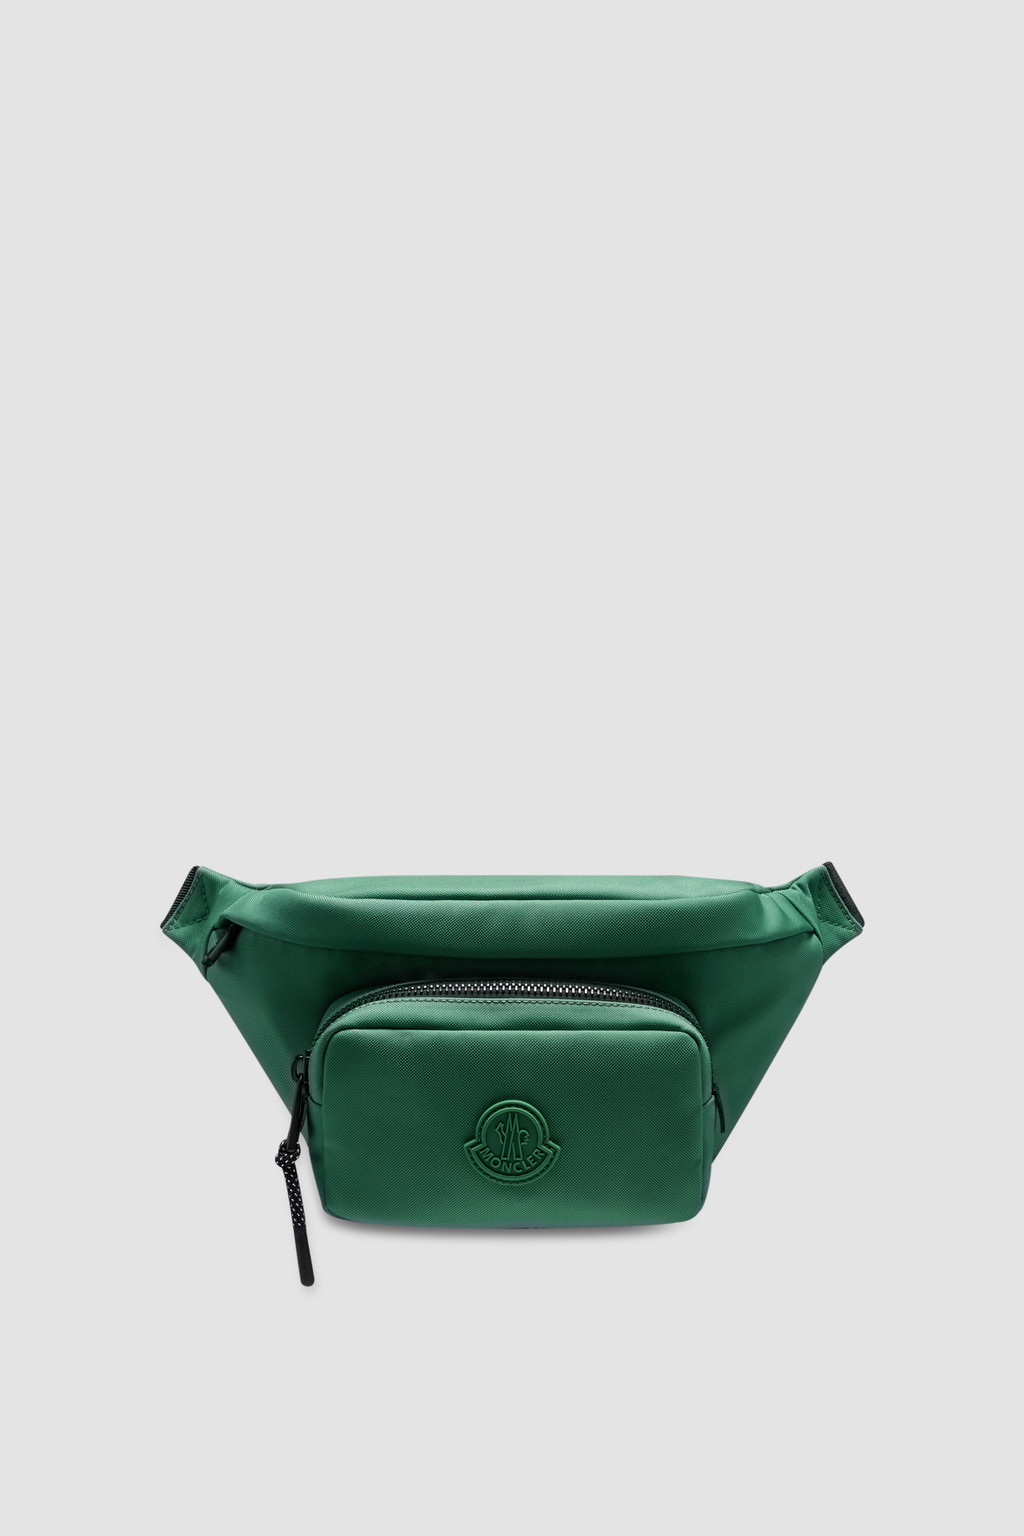 Lacoste Bags & Handbags for Men- Sale